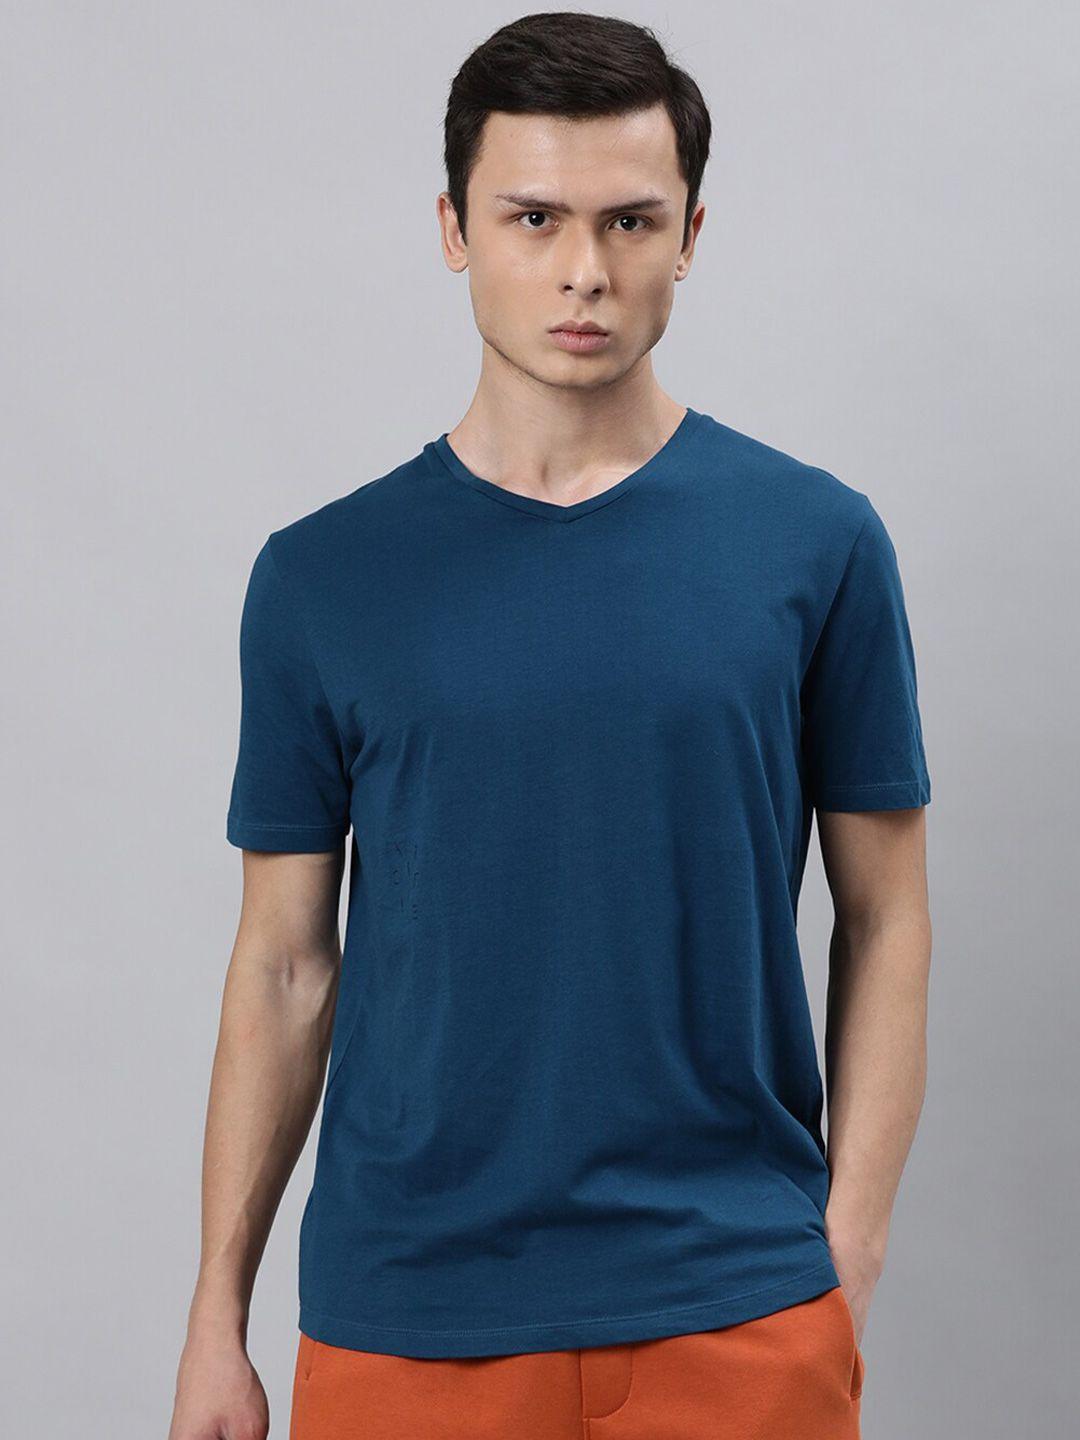 articale men blue solid v-neck slim fit cotton t-shirt